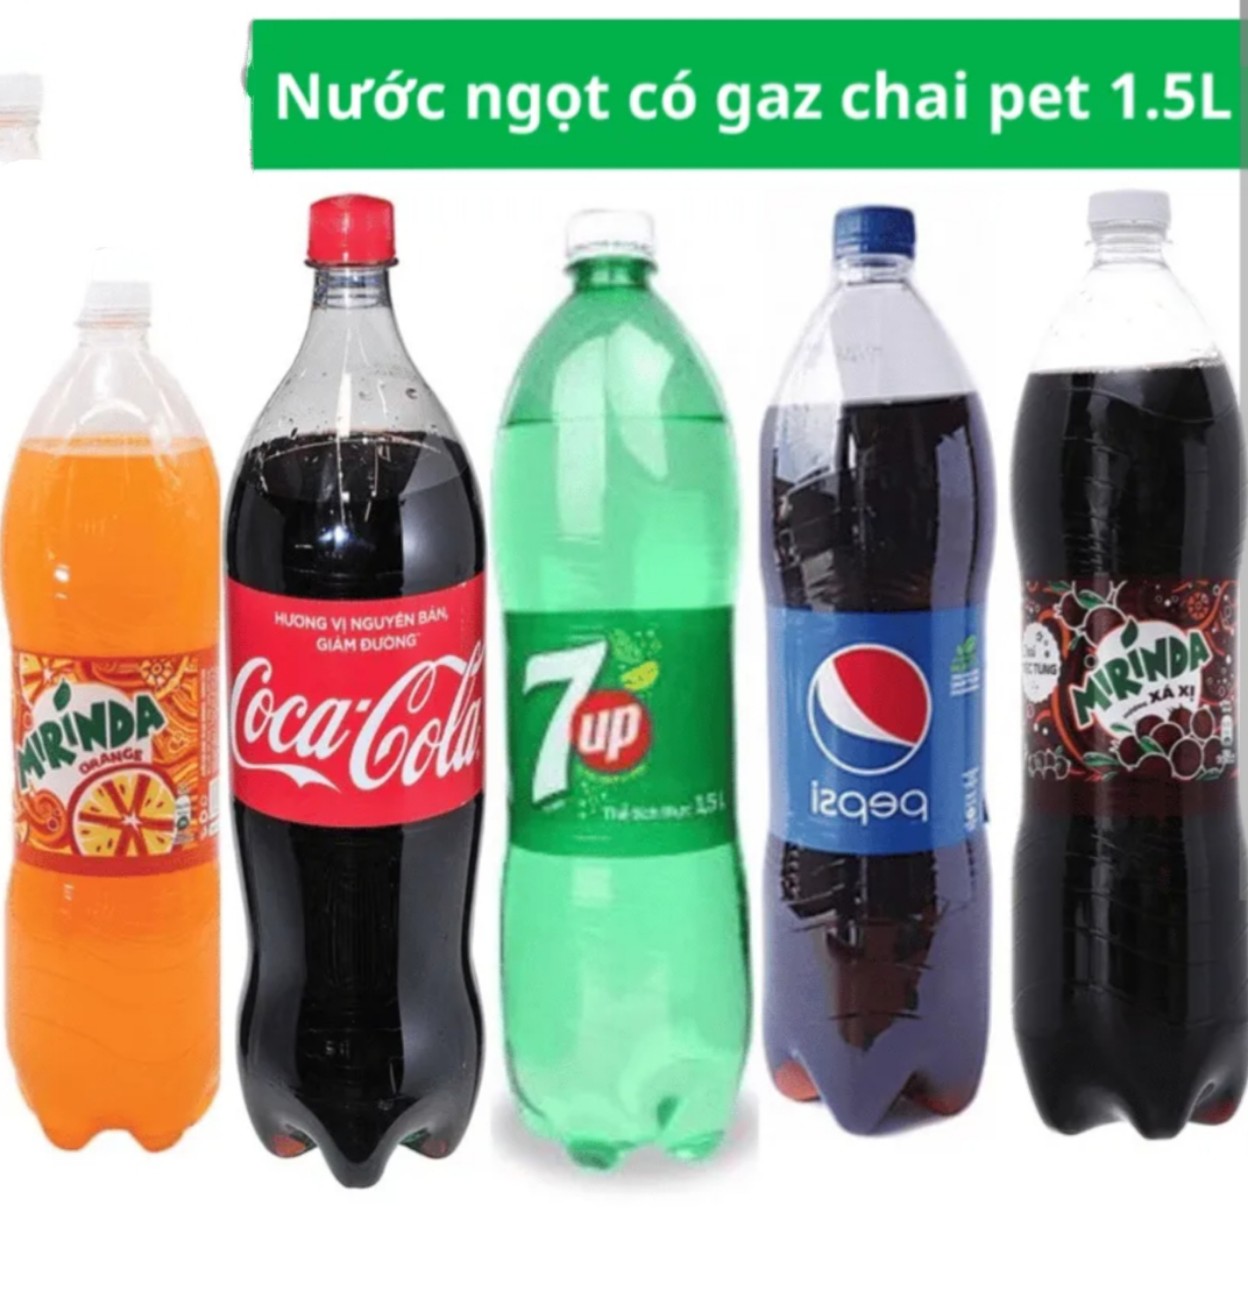 Nước Ngọt có gas Chai 1.5 Lít Pepsi, Coca, 7 up và Mirinda Xá xị cam